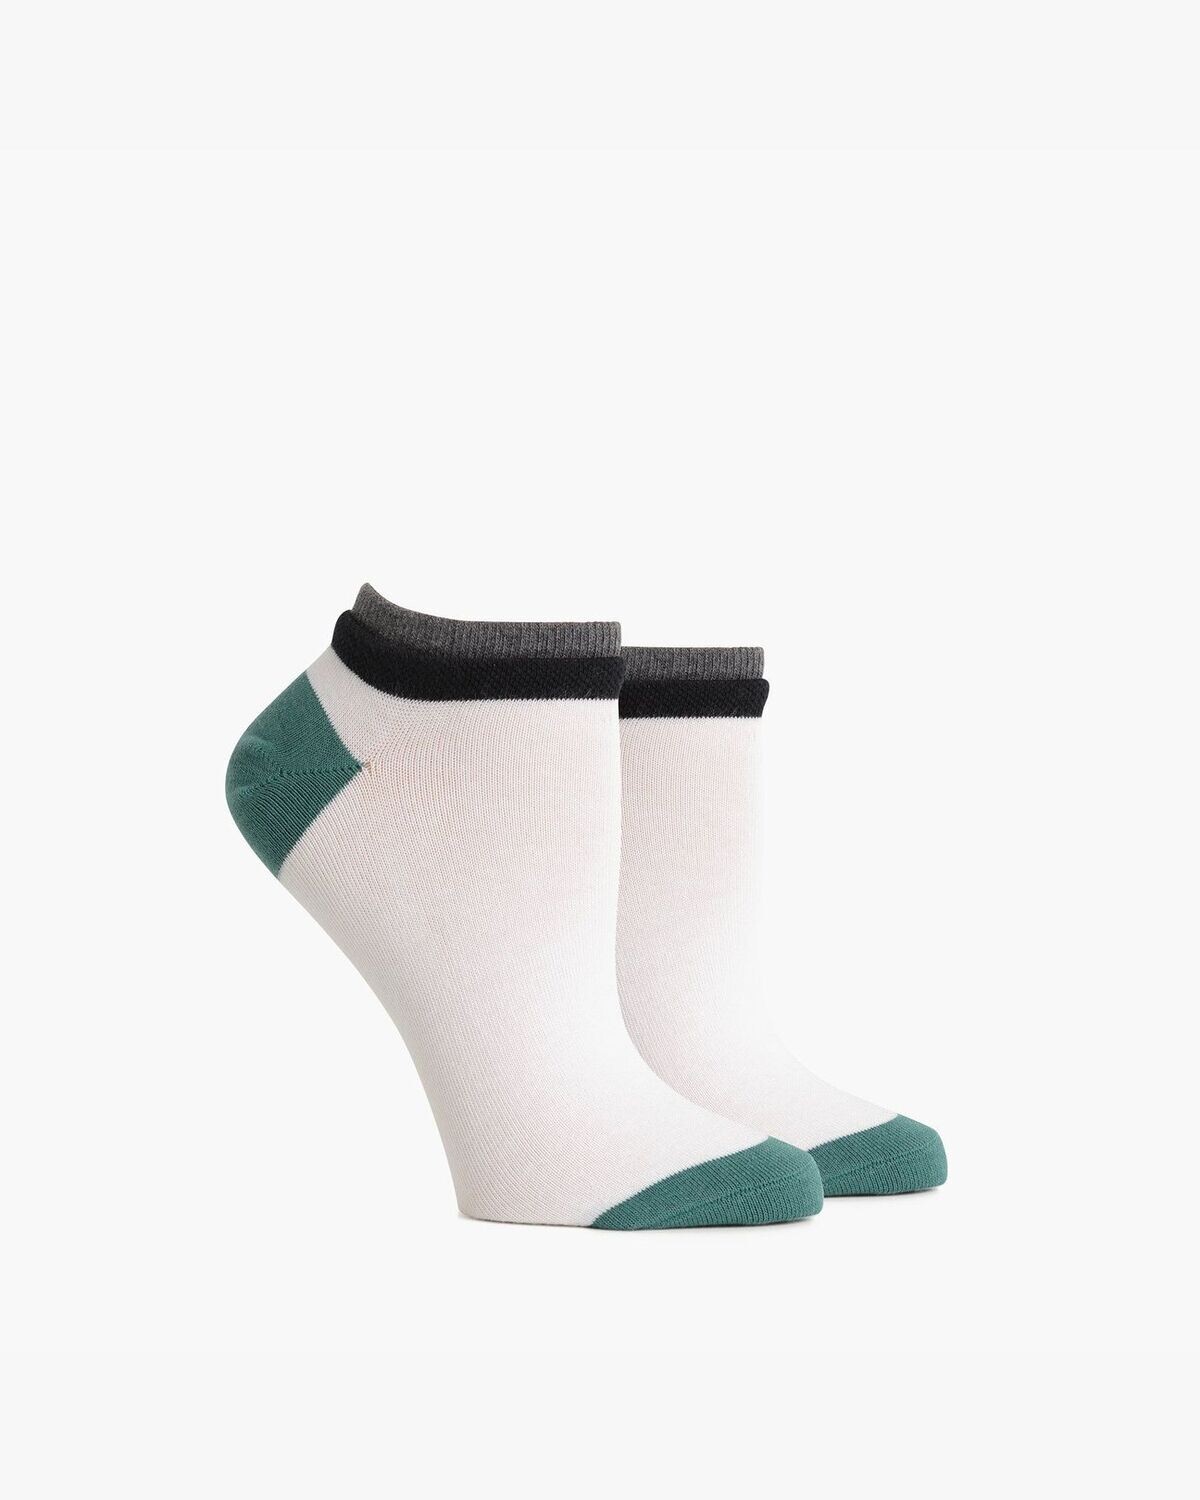 Cassat Socks in White Green